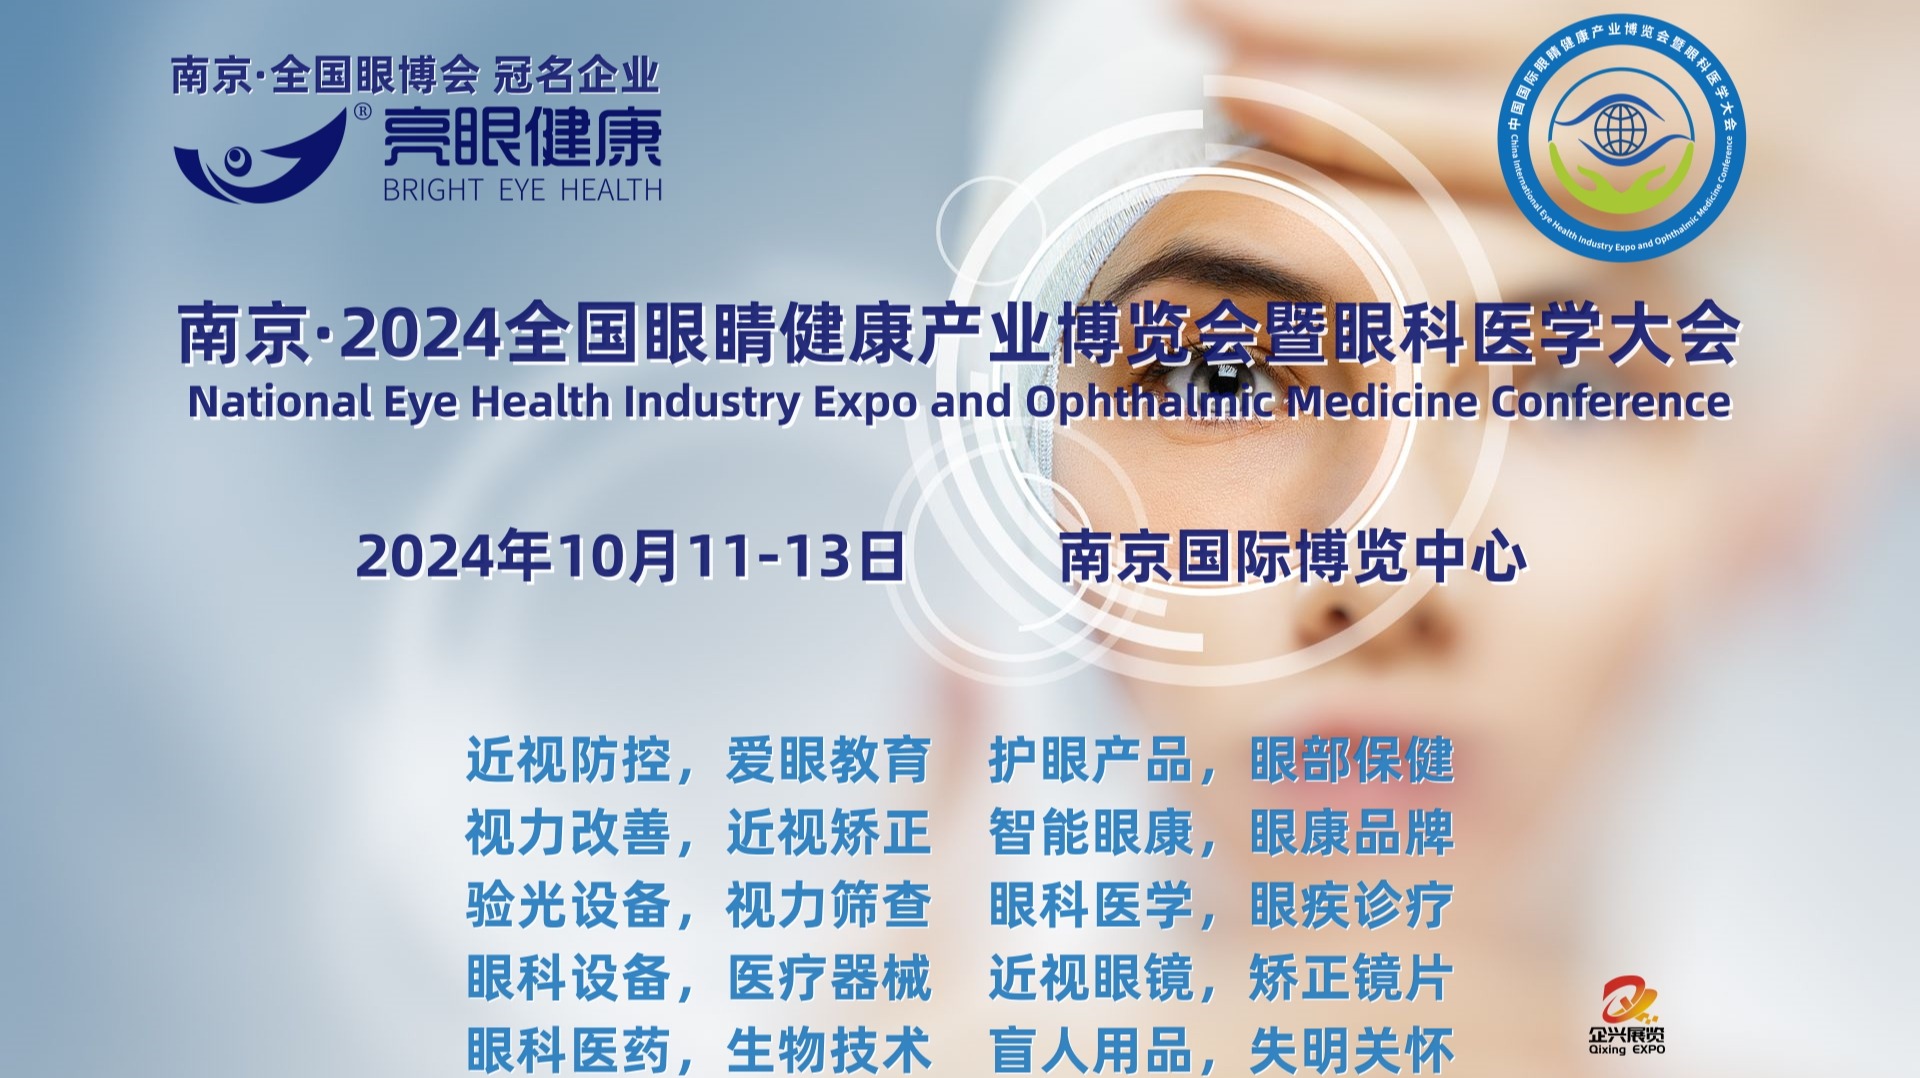   2024江苏南京眼康品牌加盟展览会暨眼科医疗设备展